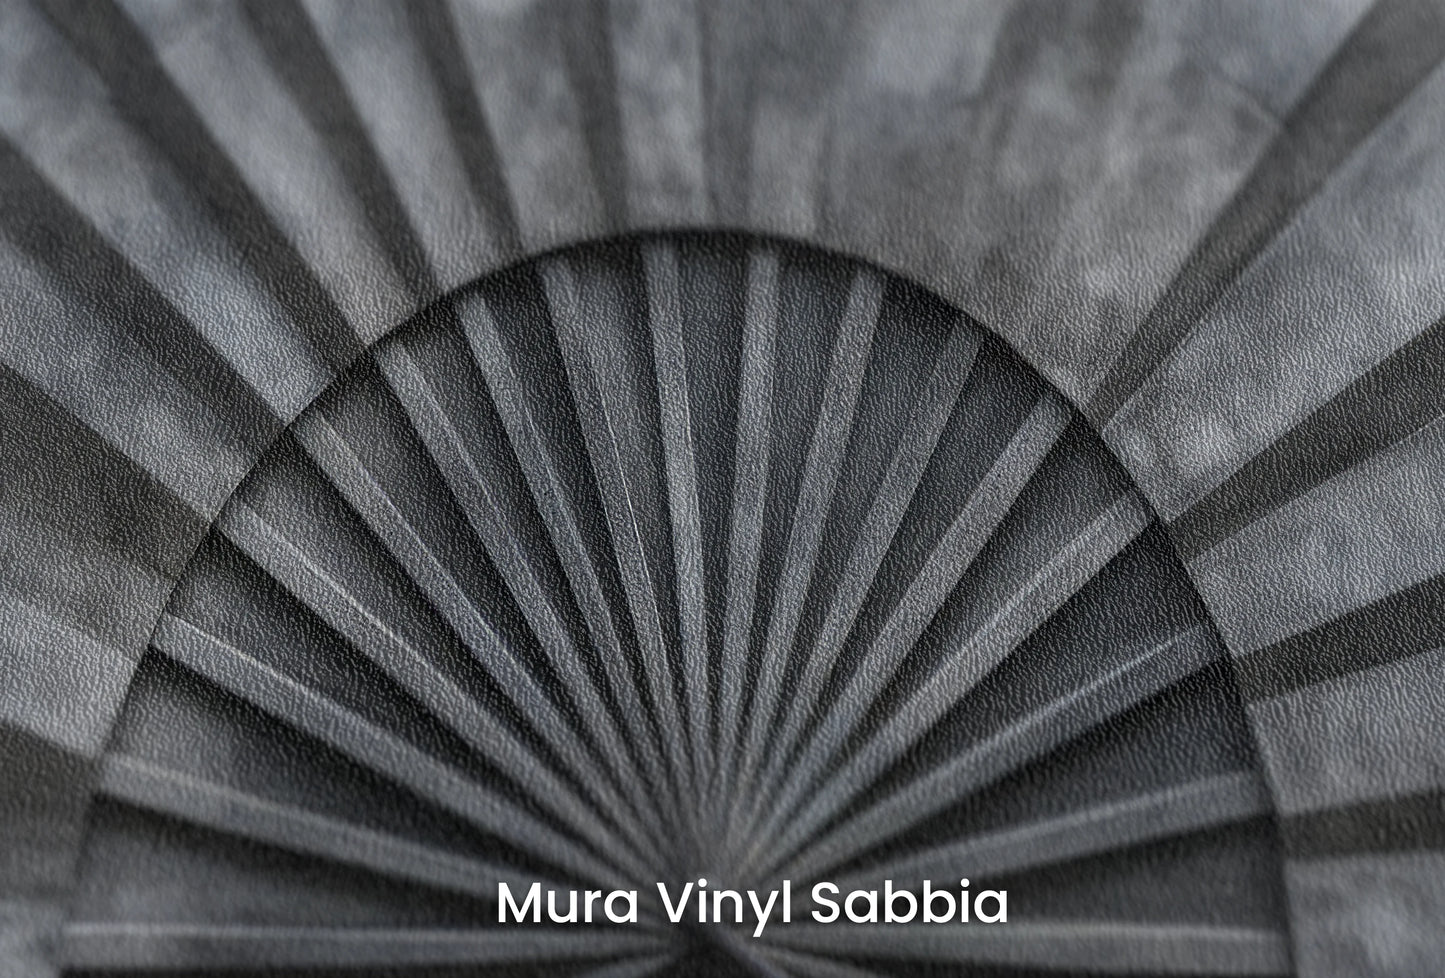 Zbliżenie na artystyczną fototapetę o nazwie Sunburst Concrete na podłożu Mura Vinyl Sabbia struktura grubego ziarna piasku.